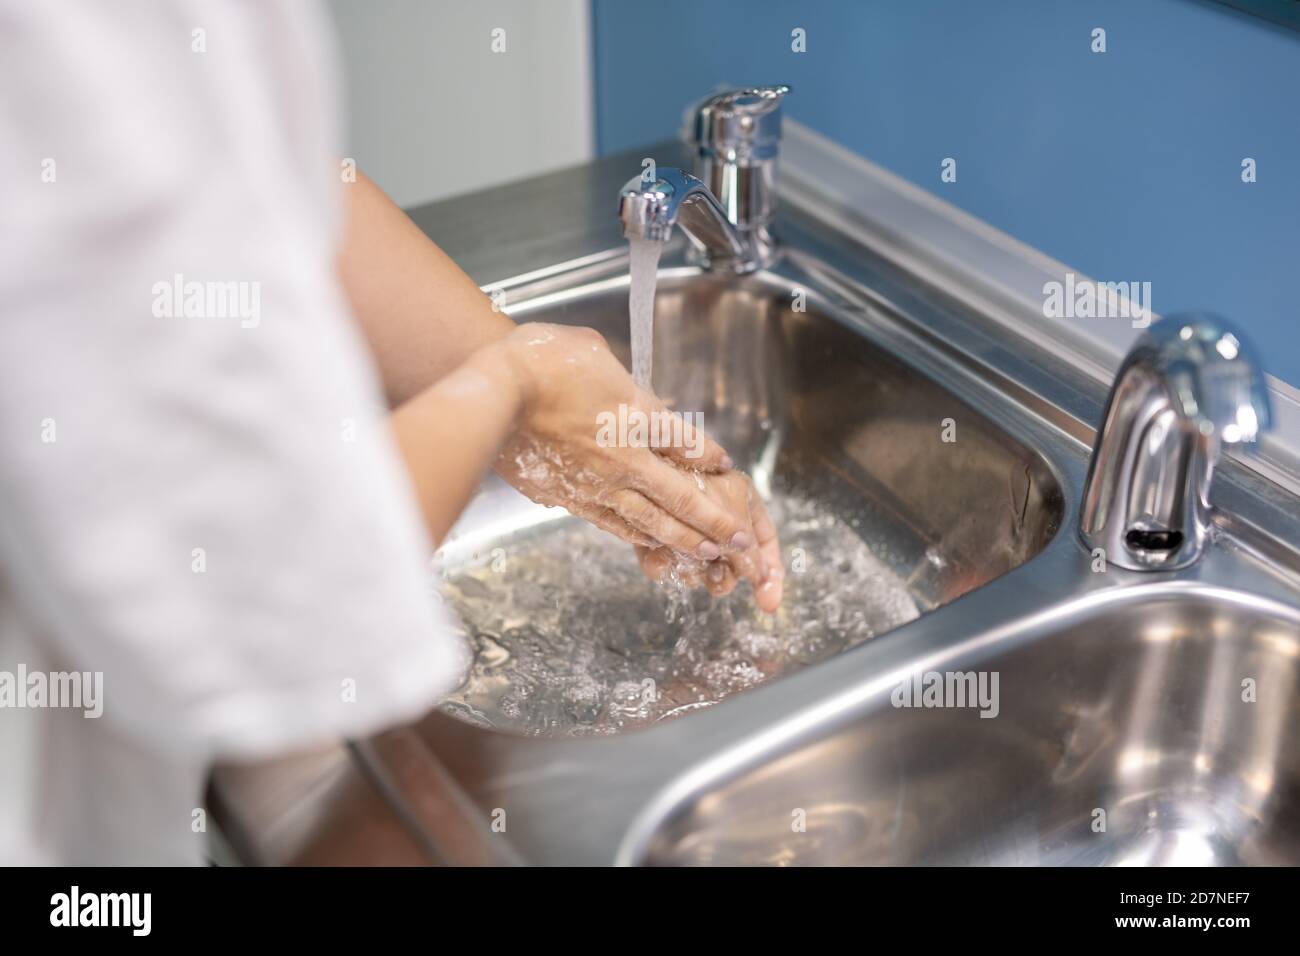 Jeune assistant ou chirurgien en uniforme blanc se lavant les mains après fonctionnement Banque D'Images